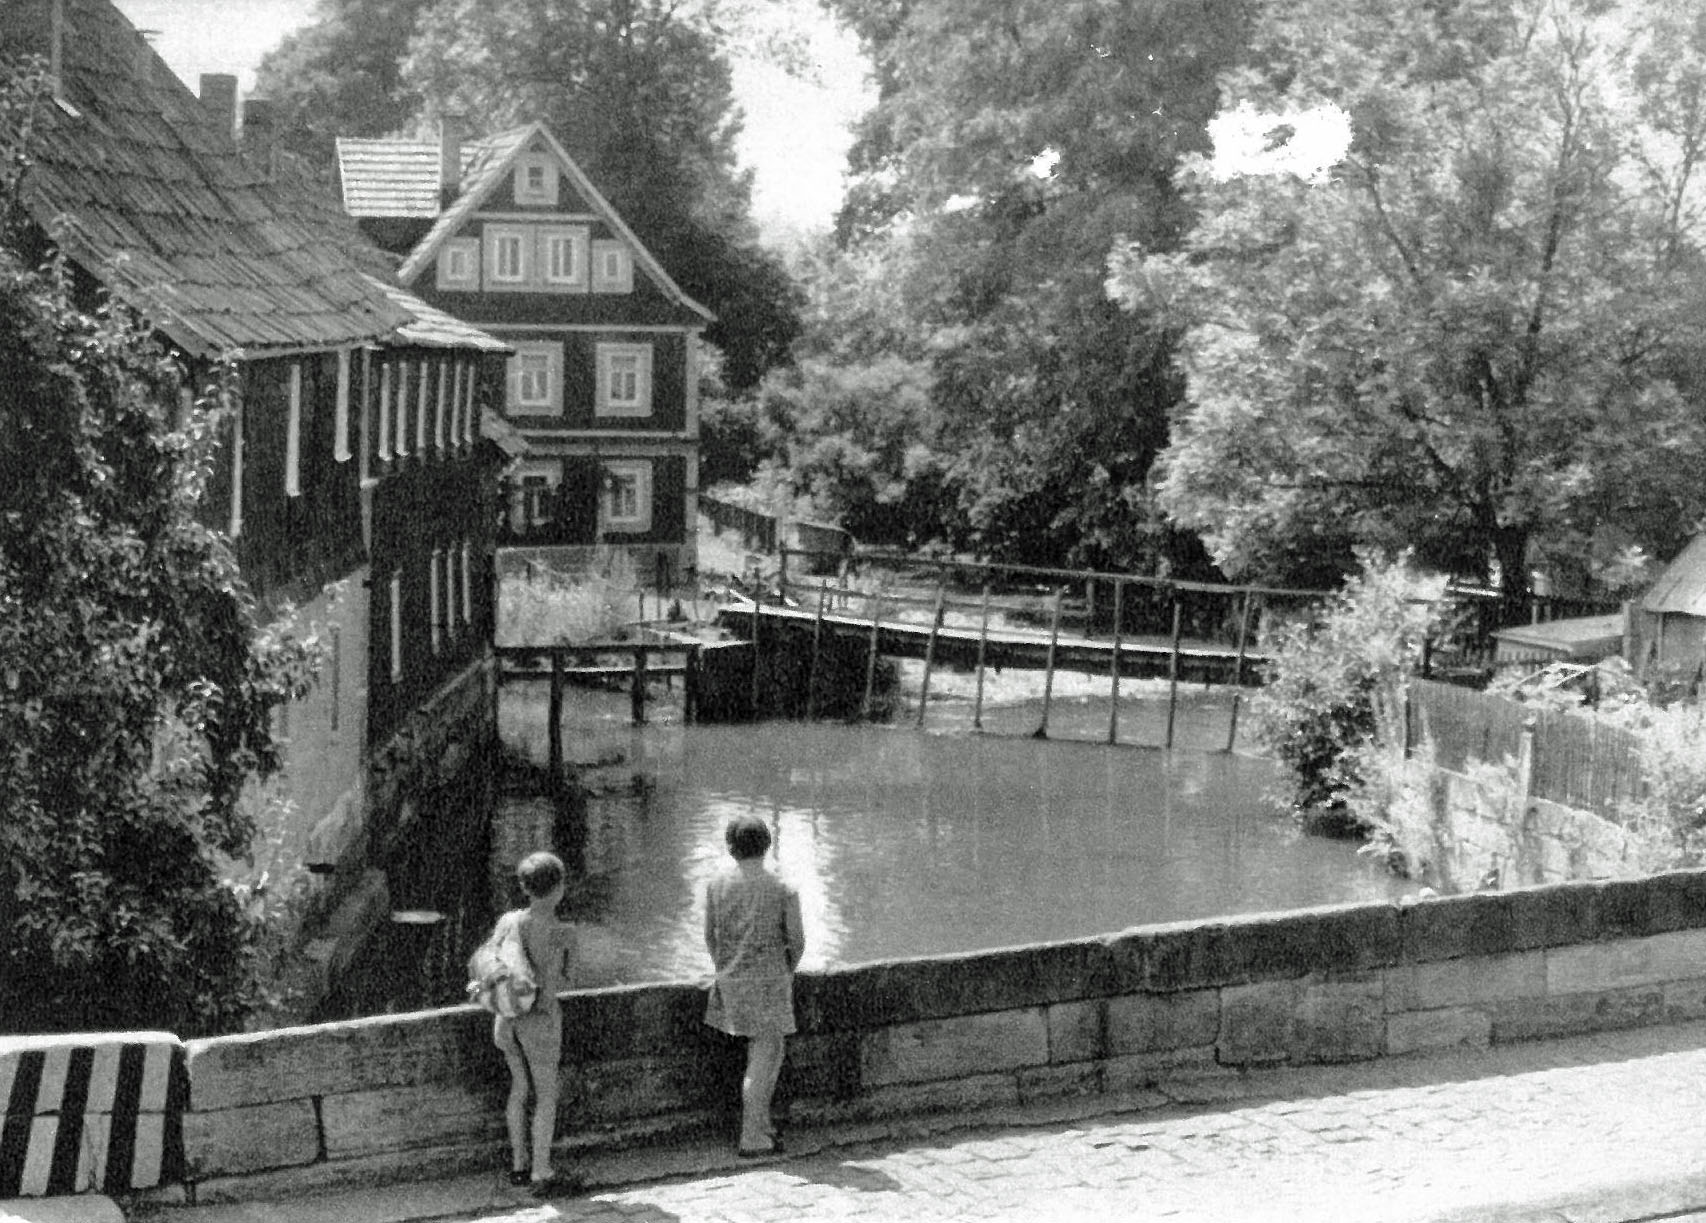 Ein Schwarz-Weiß-Foto zeigt zwei Personen, die an einer Brücke stehen und auf einen Fluss schauen. Links stehen alte Häuser.